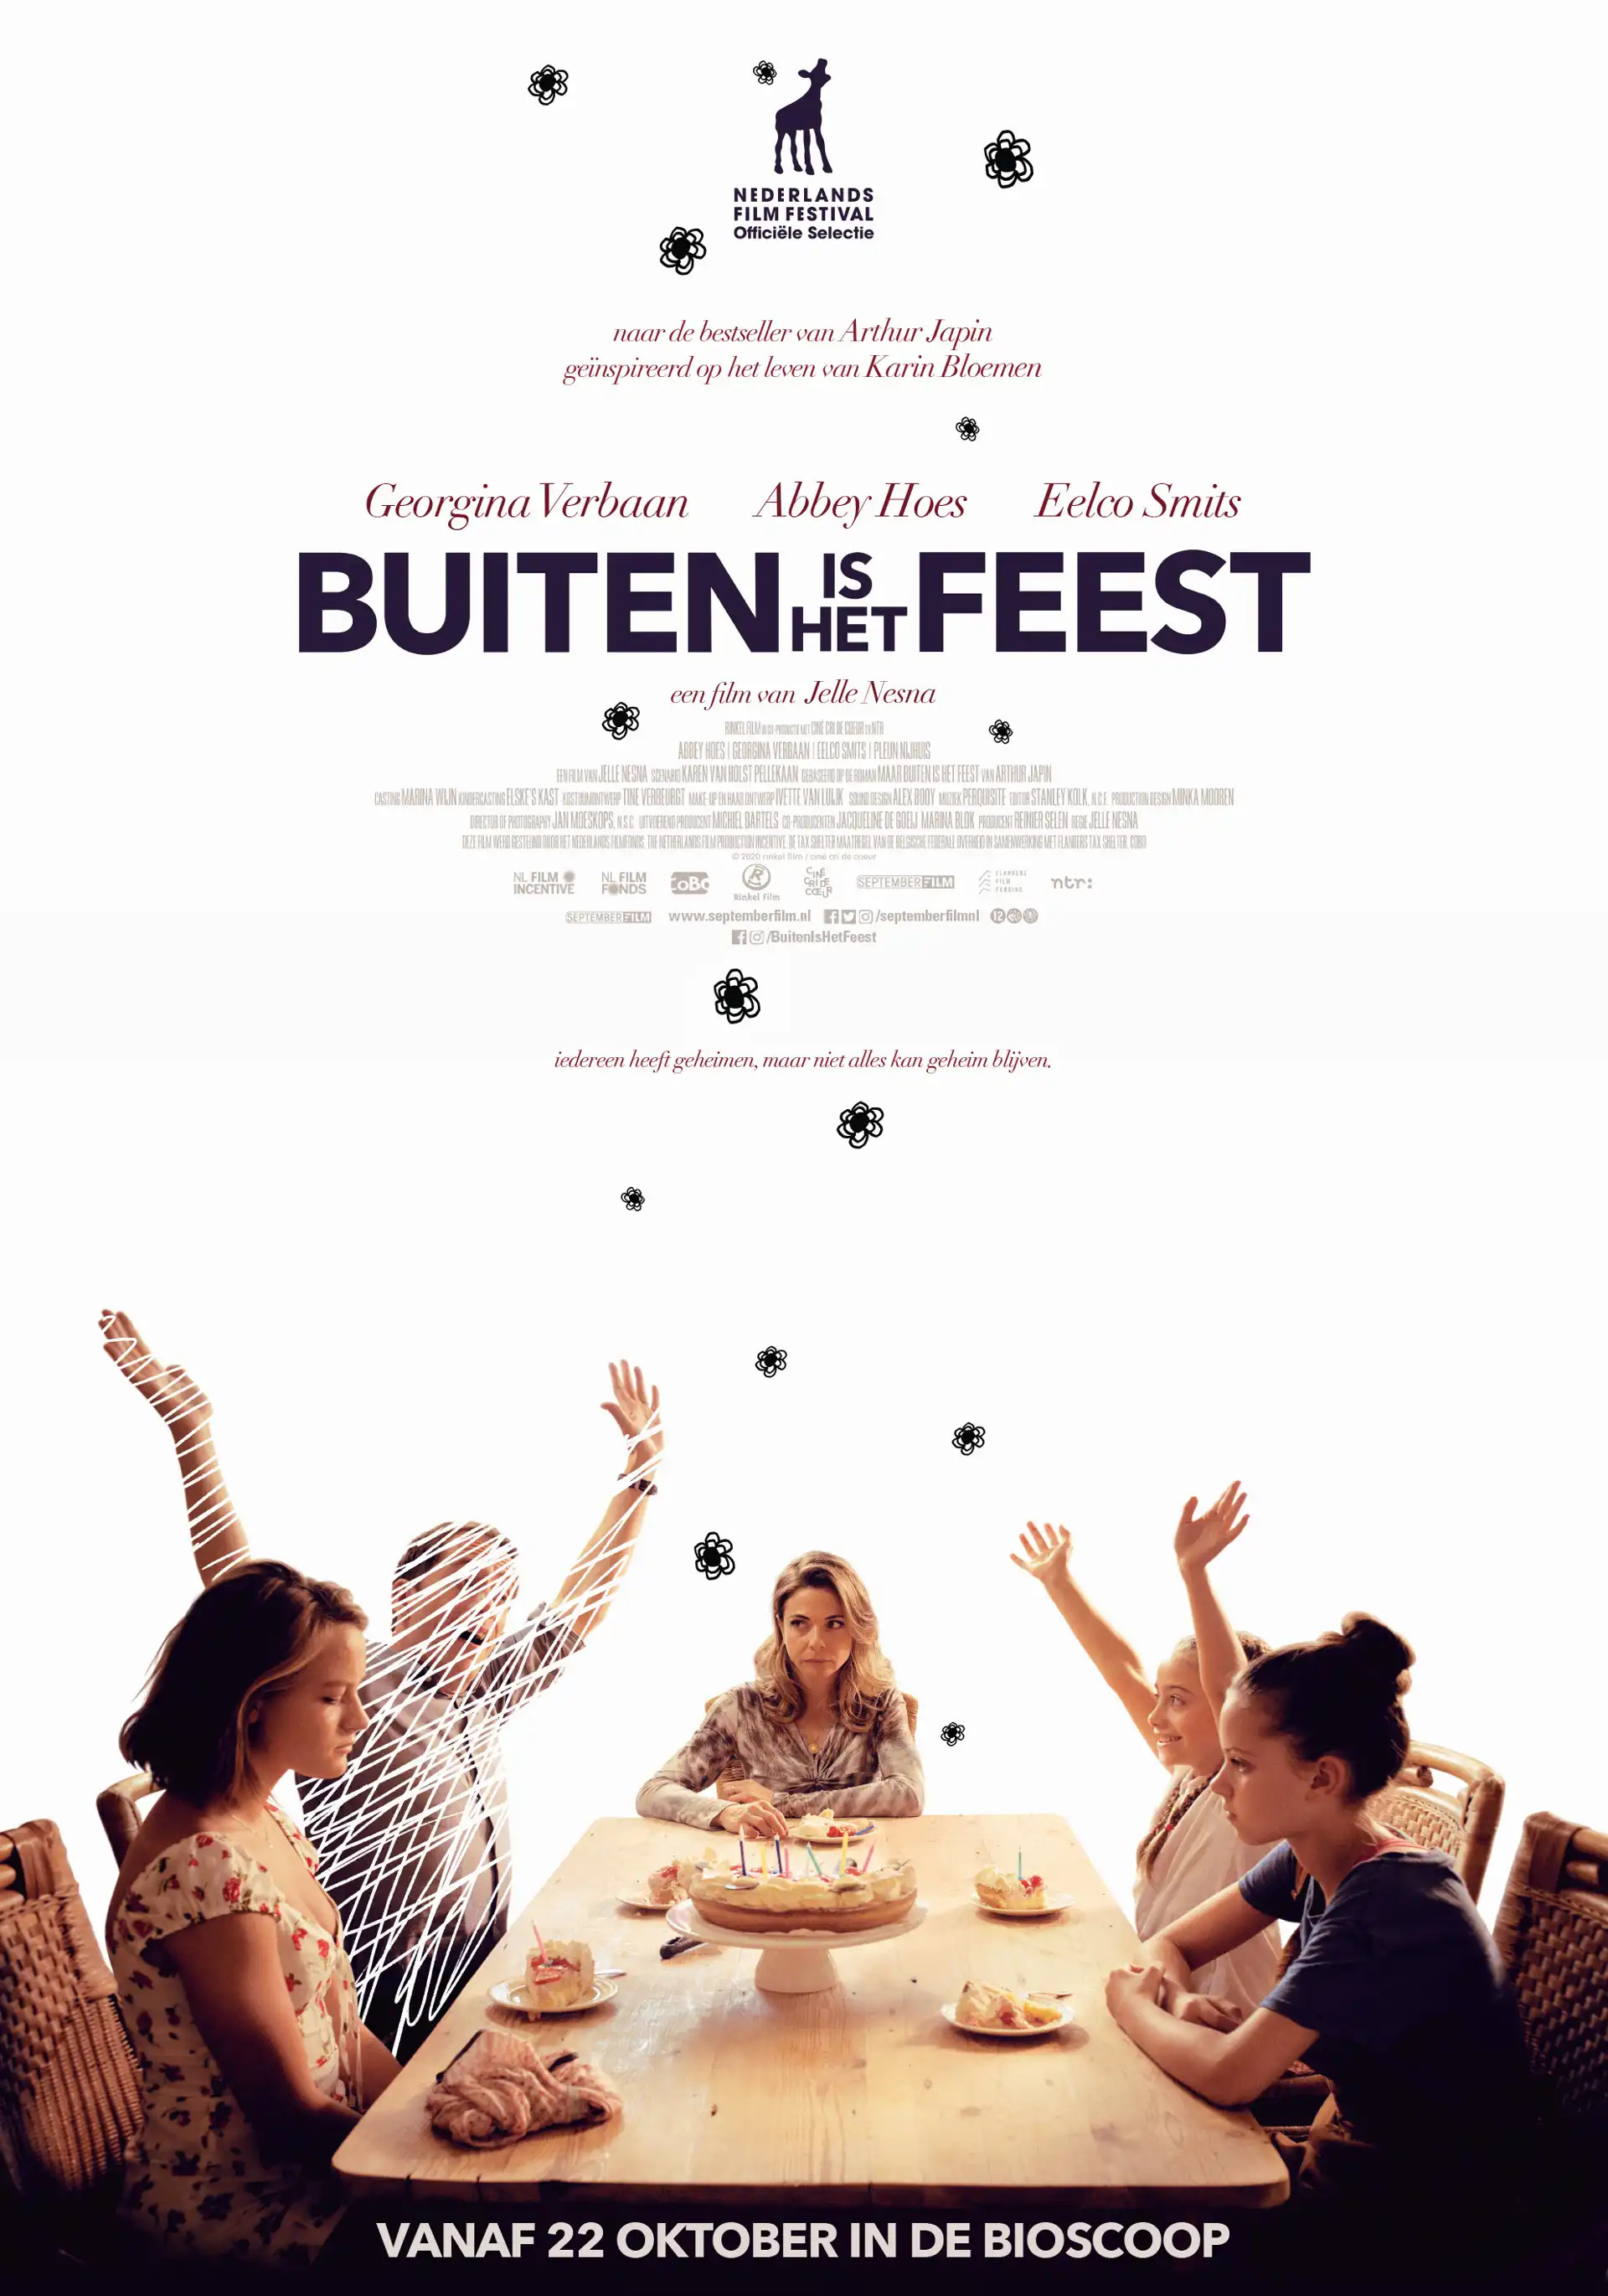 Mega Sized Movie Poster Image for Buiten is het Feest 